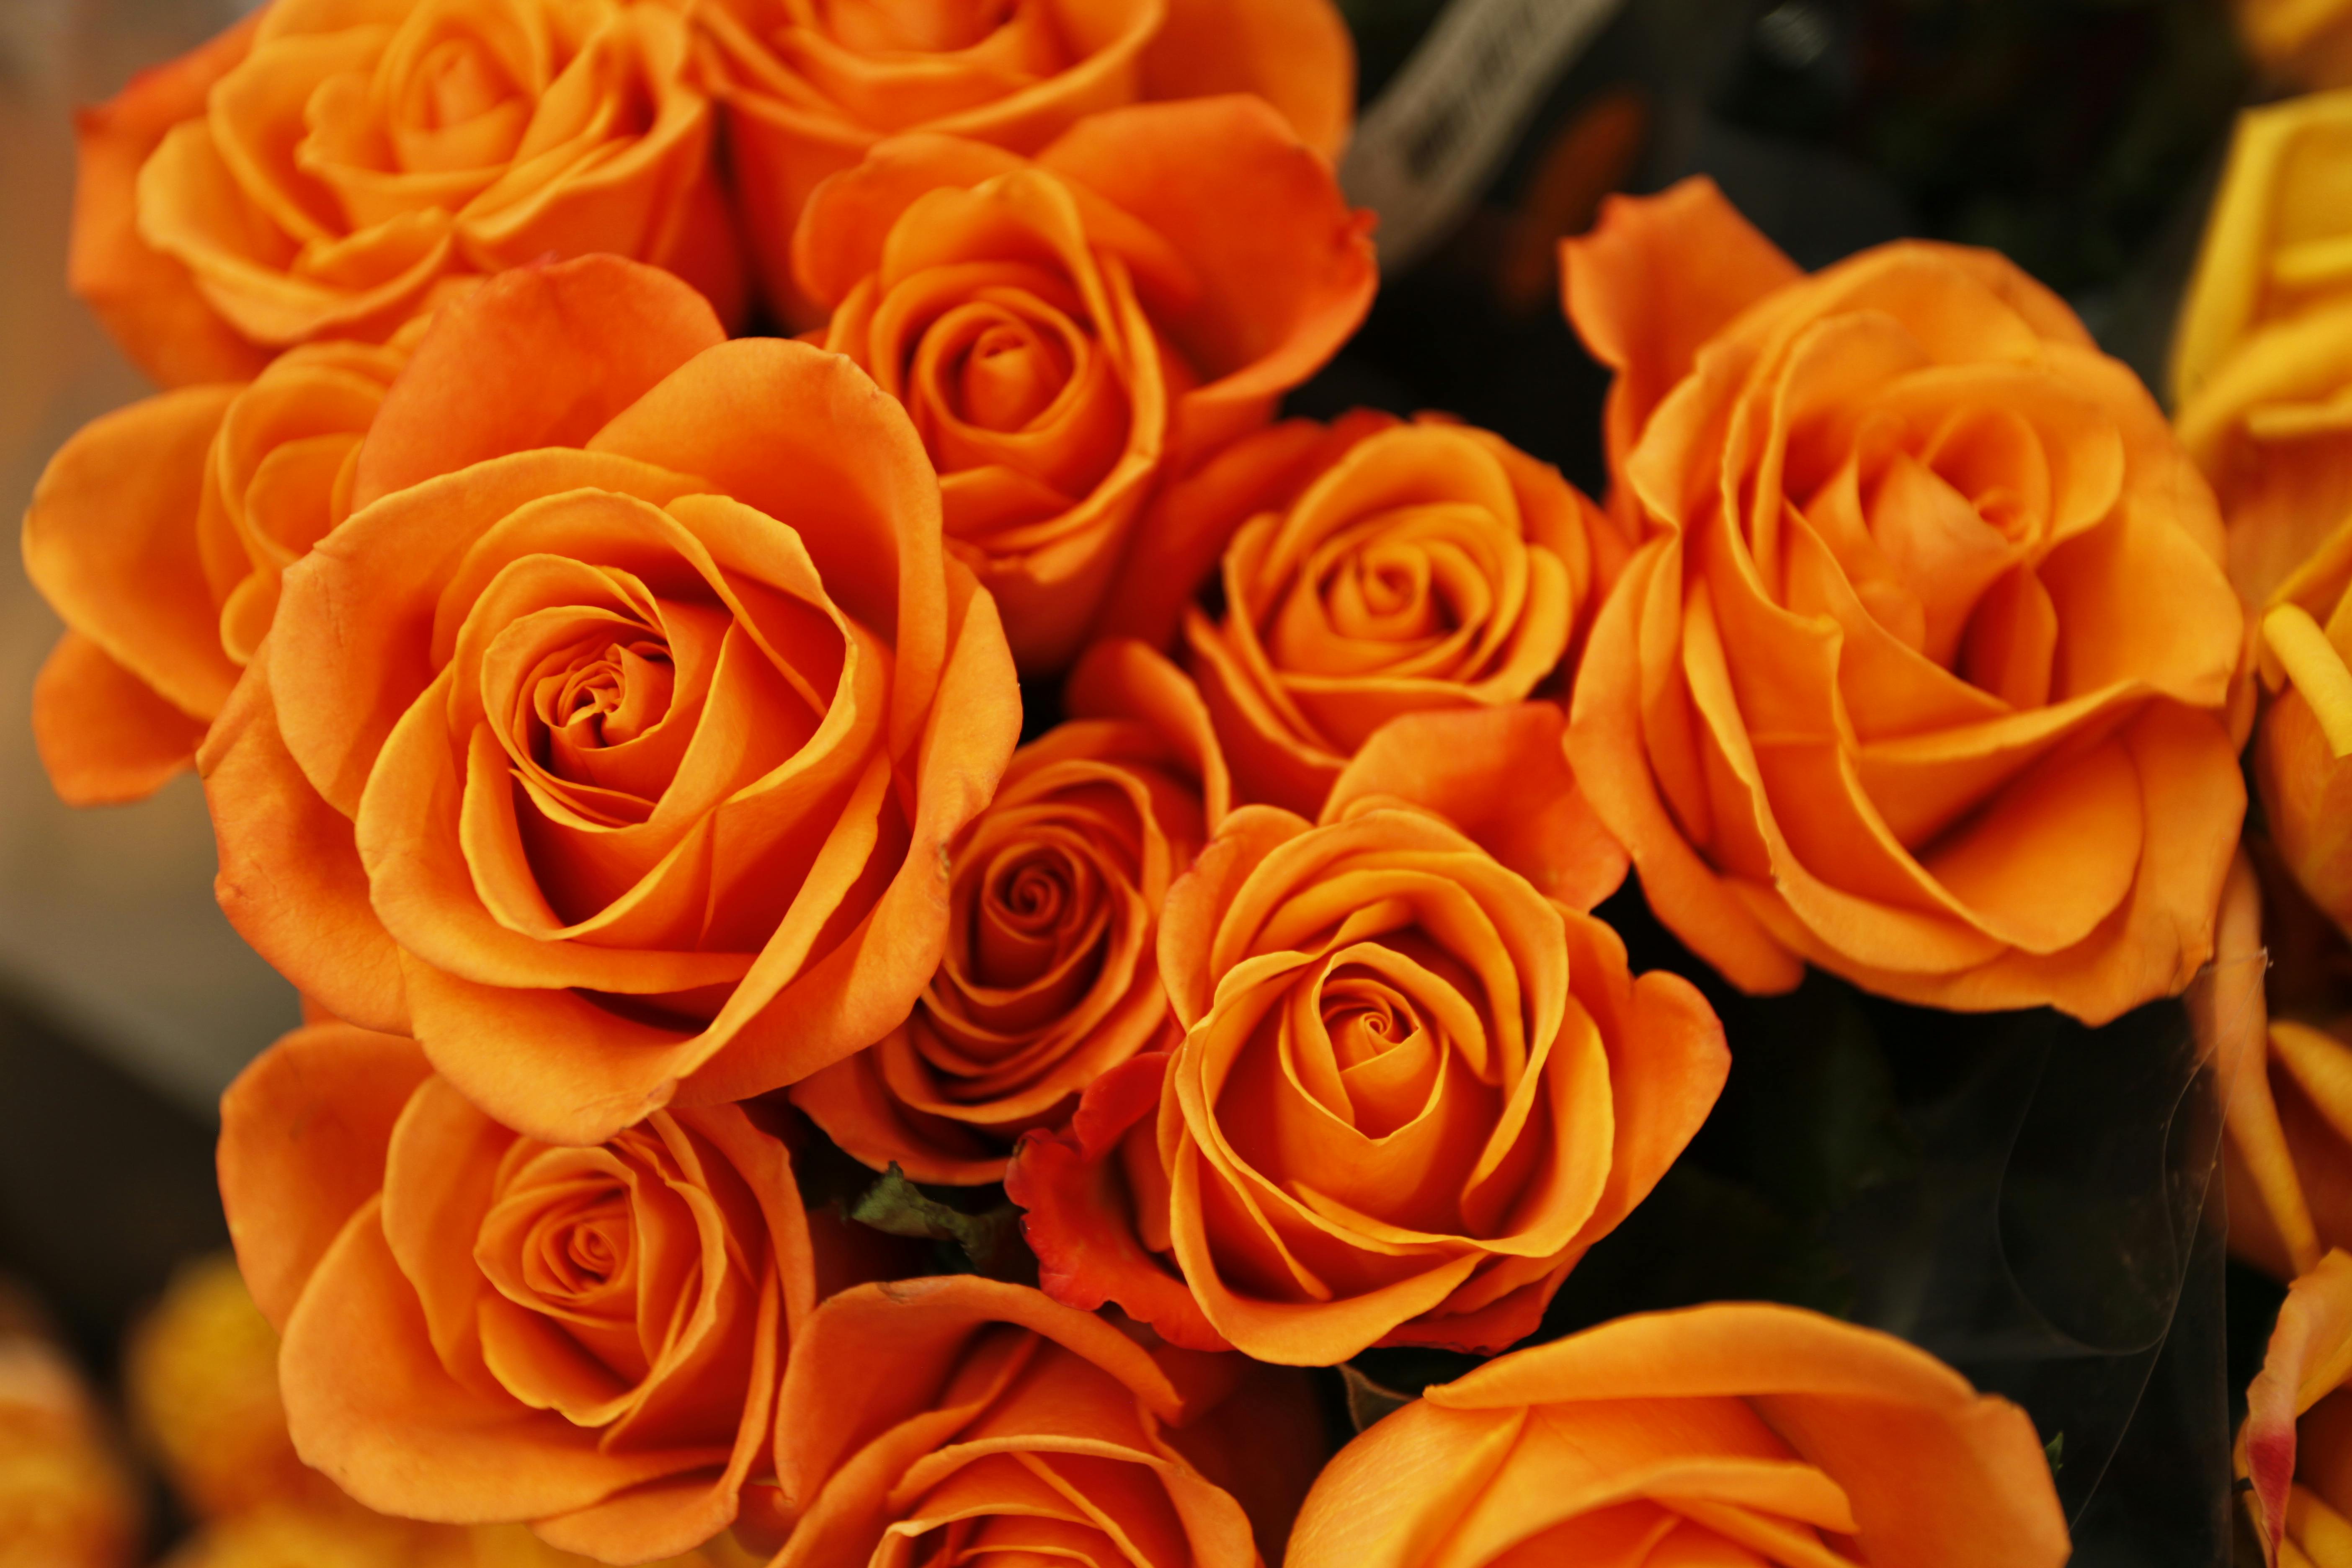 550 Orange Flower Pictures  Download Free Images on Unsplash